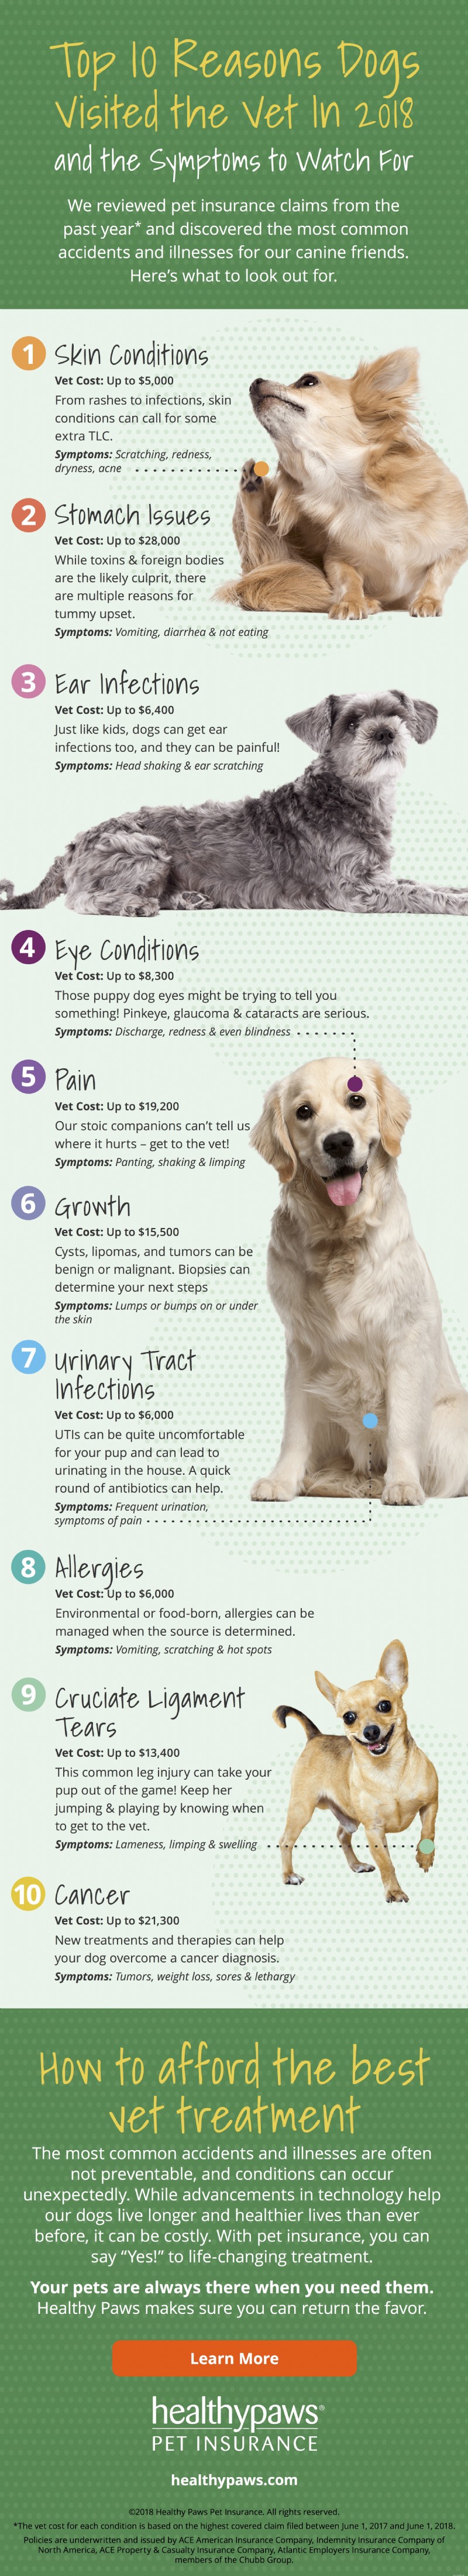 De 10 bästa anledningarna till att hundar besöker veterinären [Infographic]